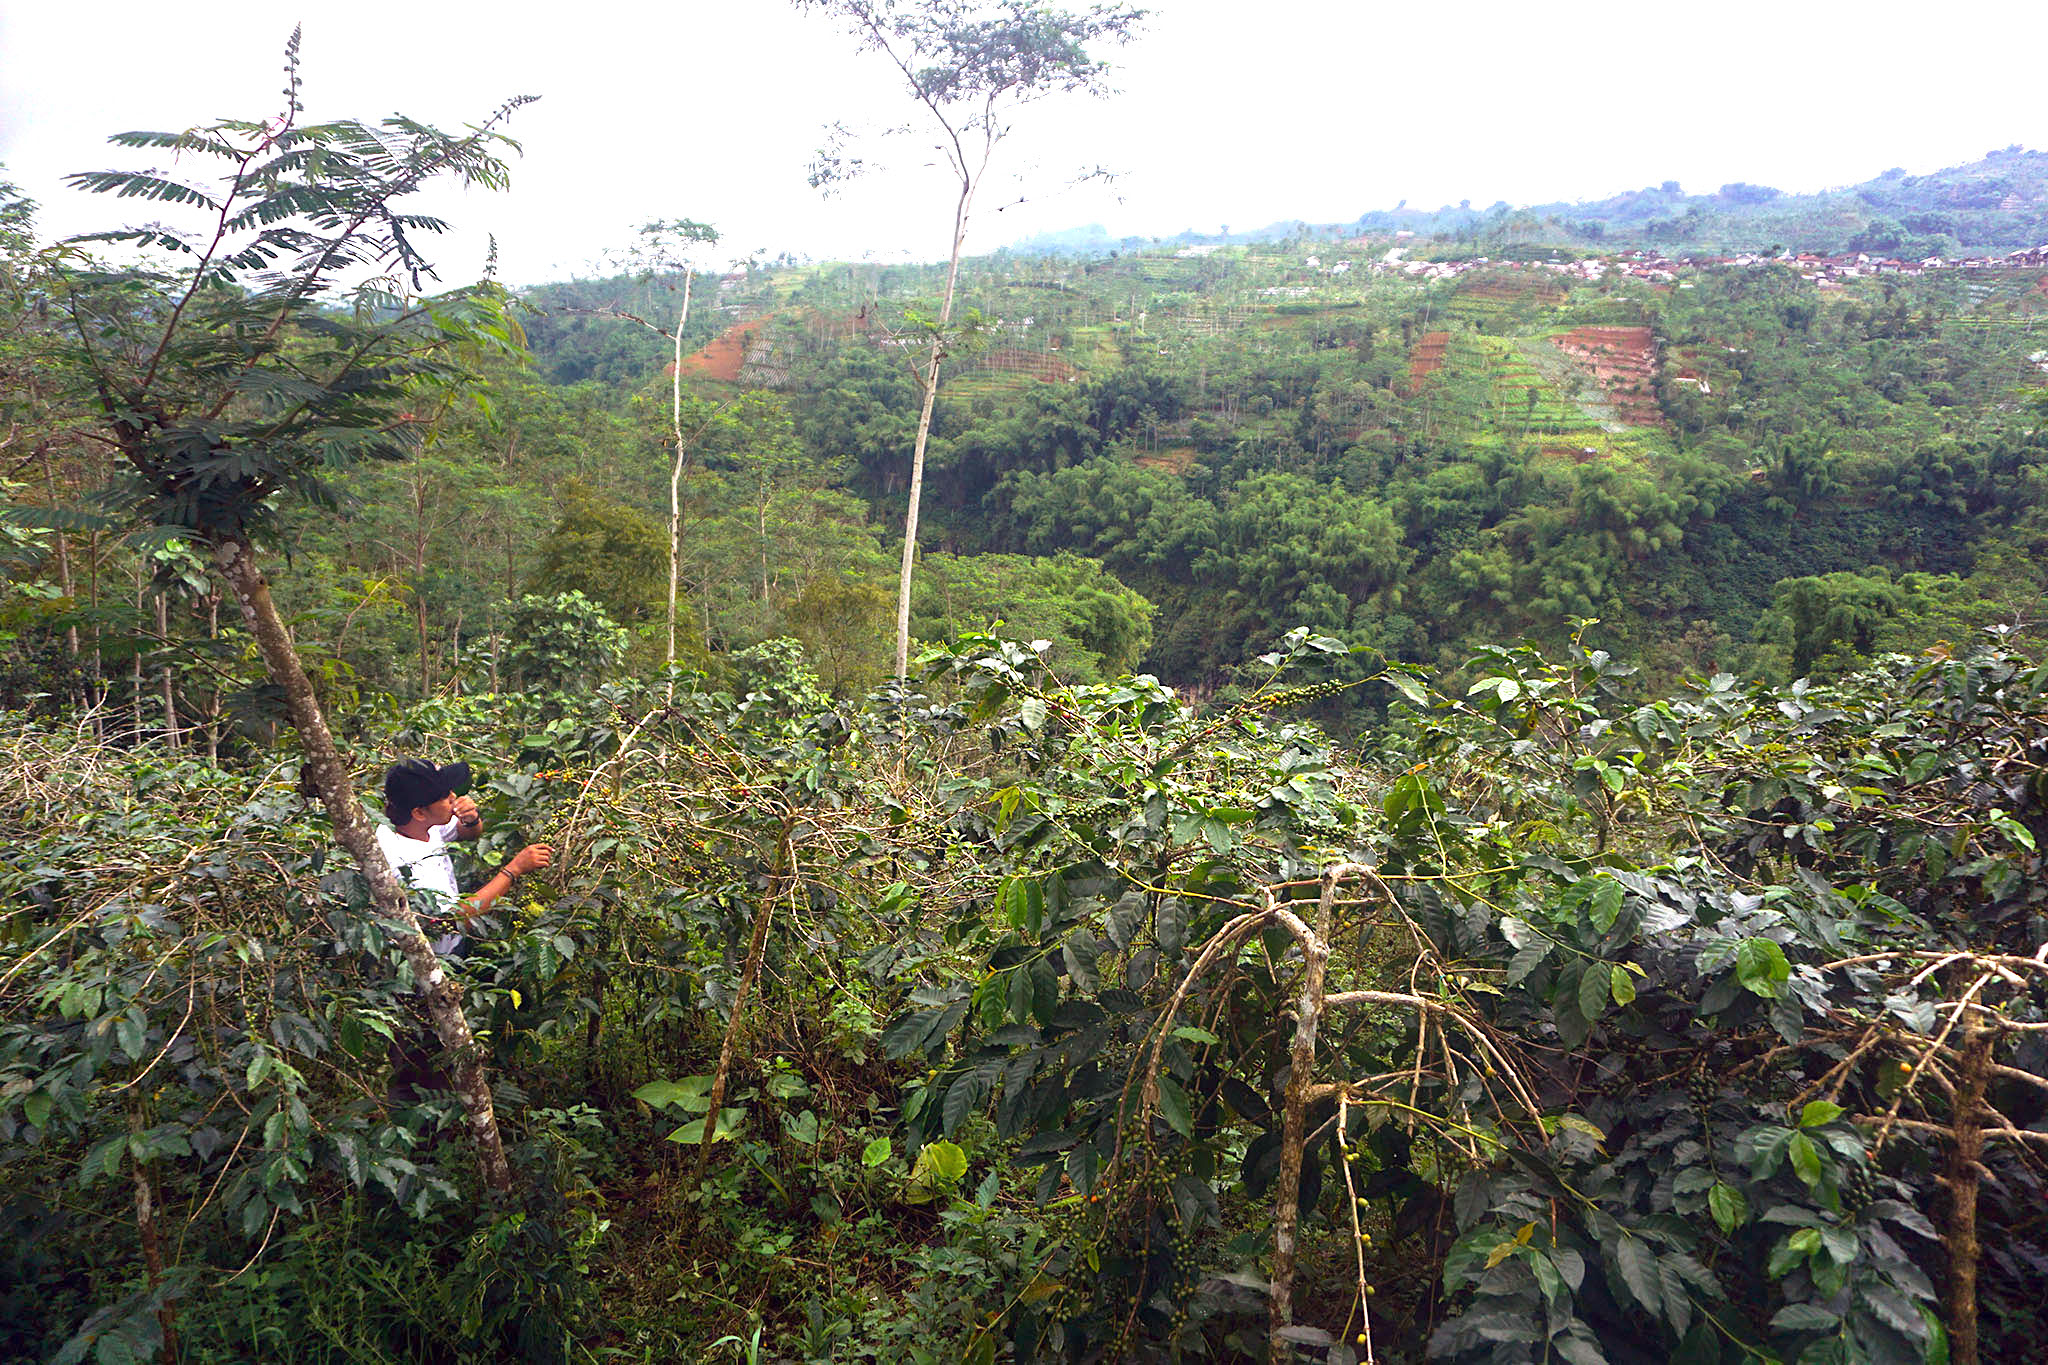 Areal pohon kopi yang berada di lereng pegunungan di Banjarnegara, Jateng. Selain bernilai ekonomi, tanaman kopi juga sebagai pohon konservasi | Foto: L Darmawan/Mongabay Indonesia